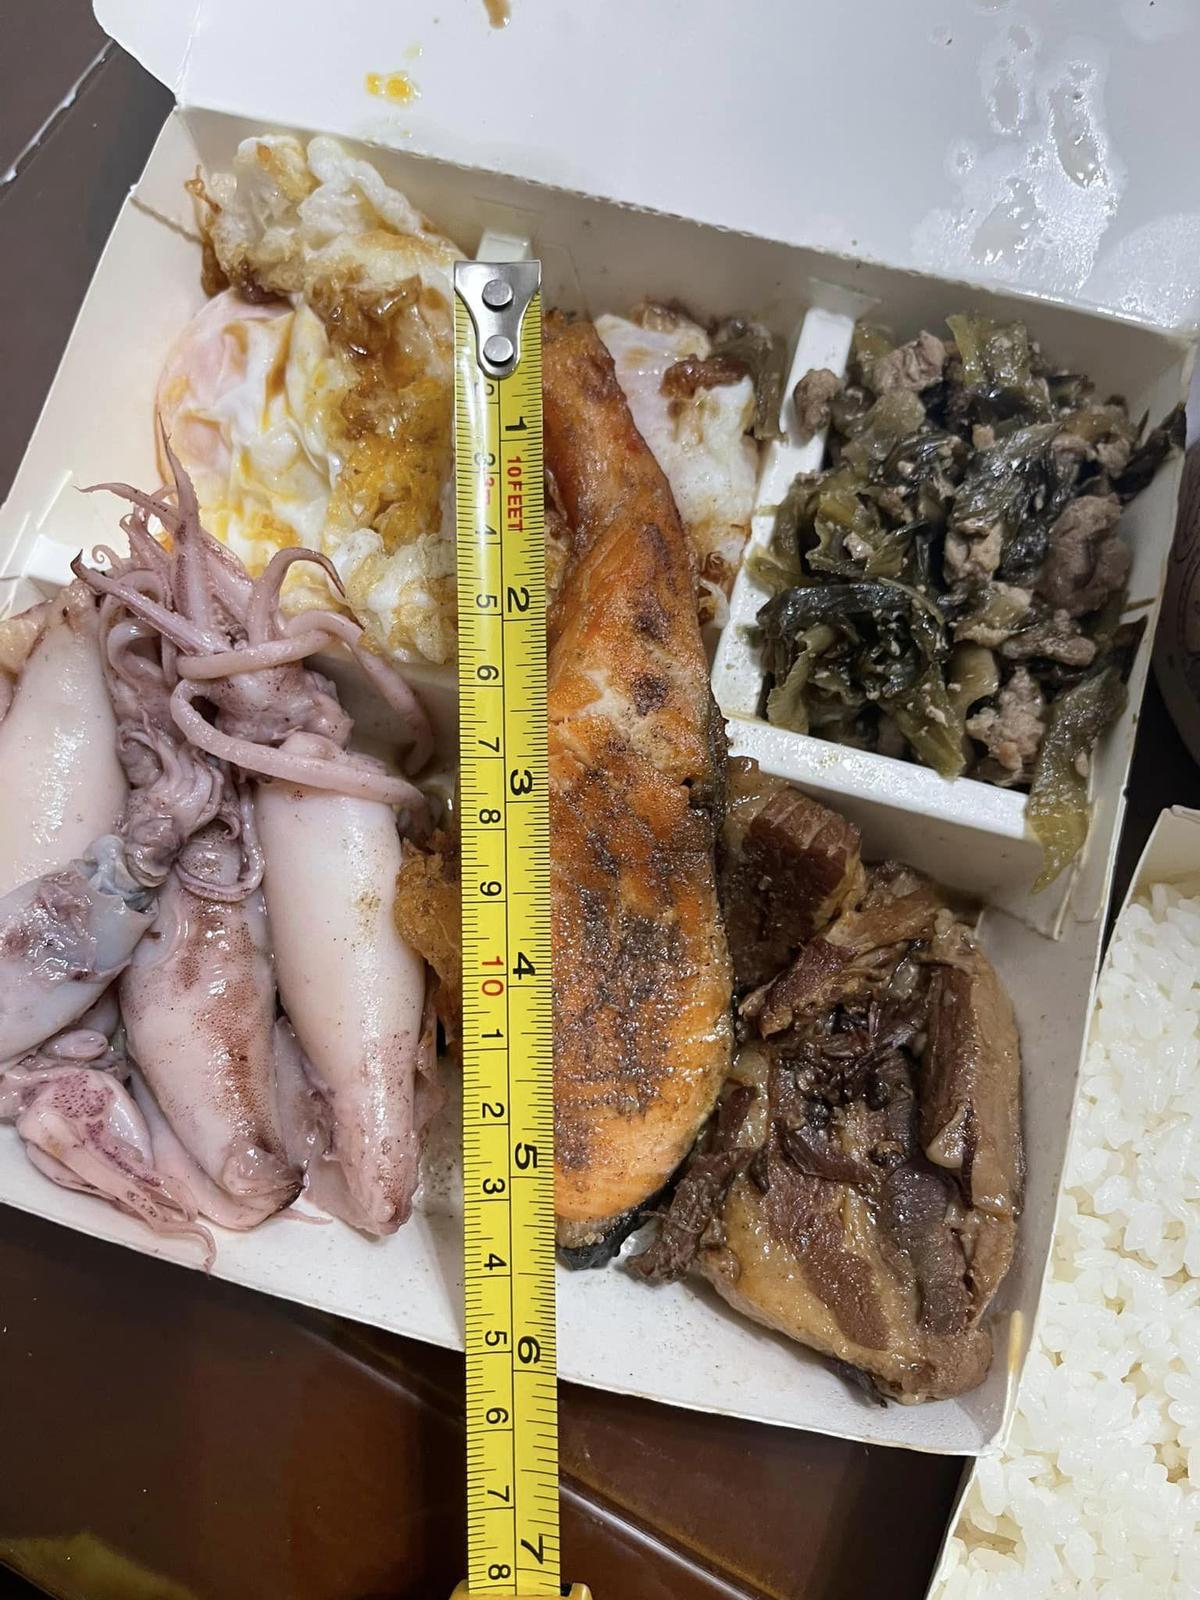 女子還拿出尺量了半片煎鮭魚的長度為13.5公分。（翻攝自臉書社團《新竹大小事》）